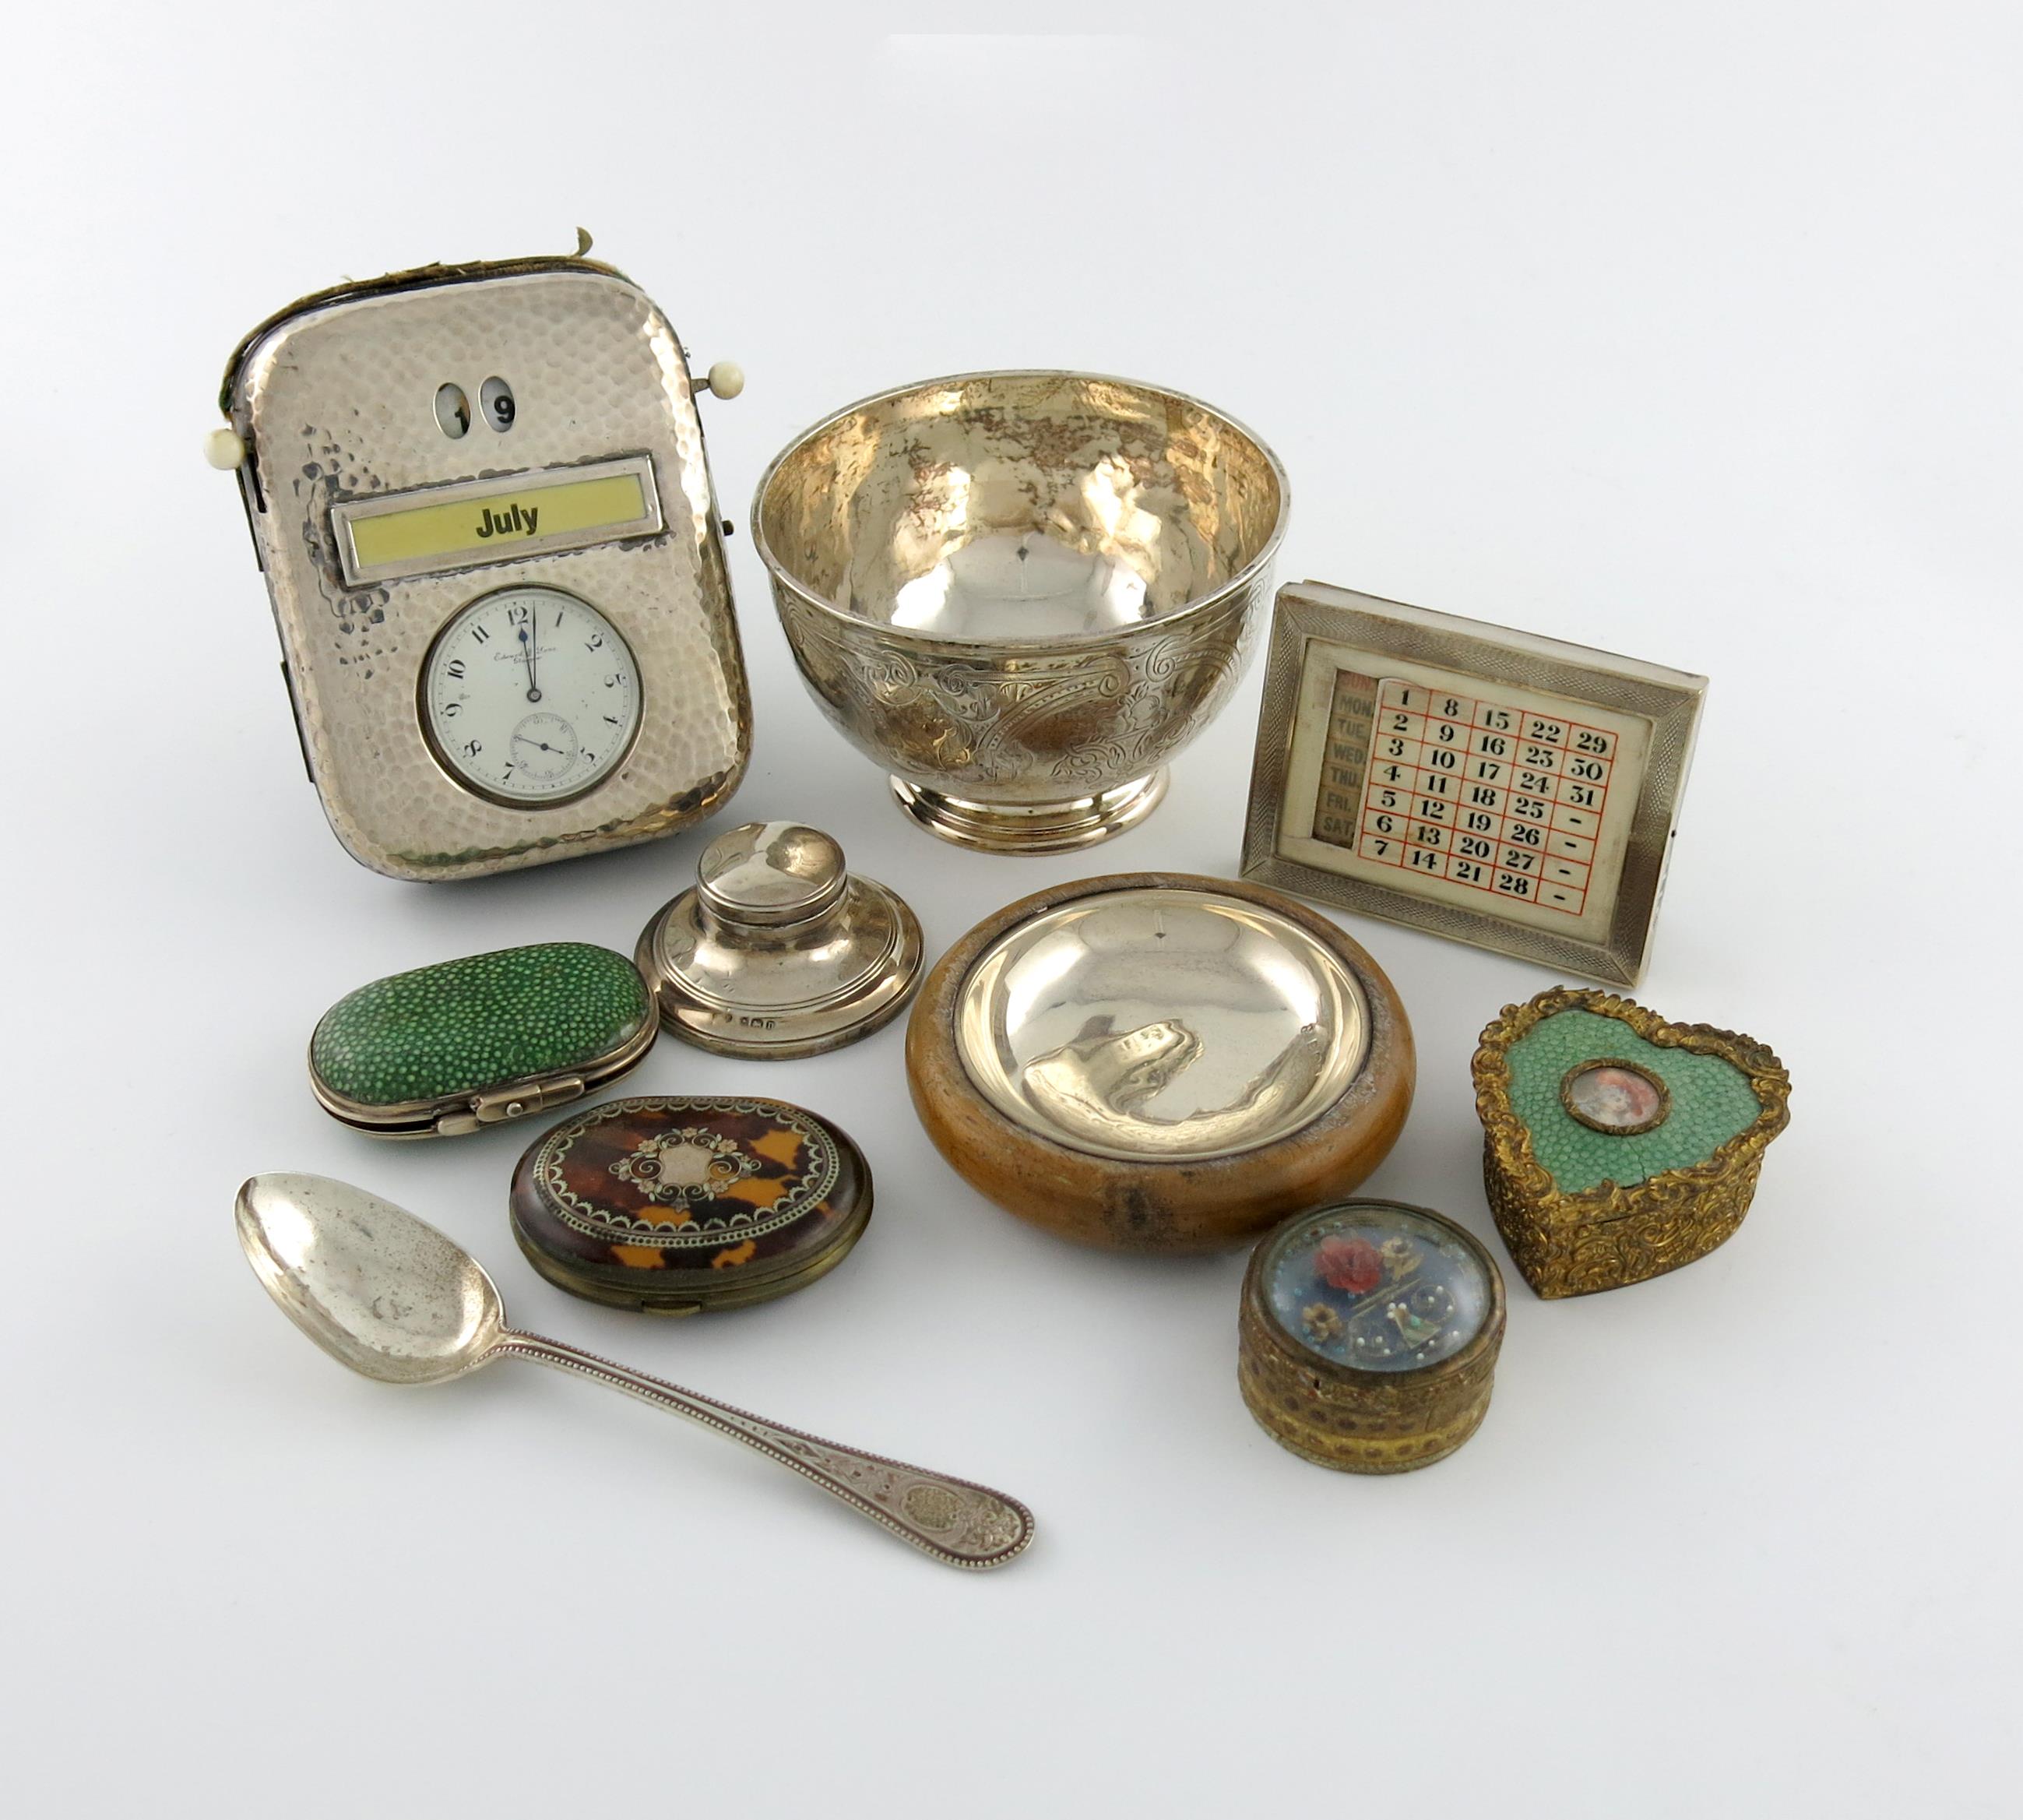 λ A mixed lot, comprising silver items: a Victorian bowl and spoon, Sheffield 1864, a calendar/watch